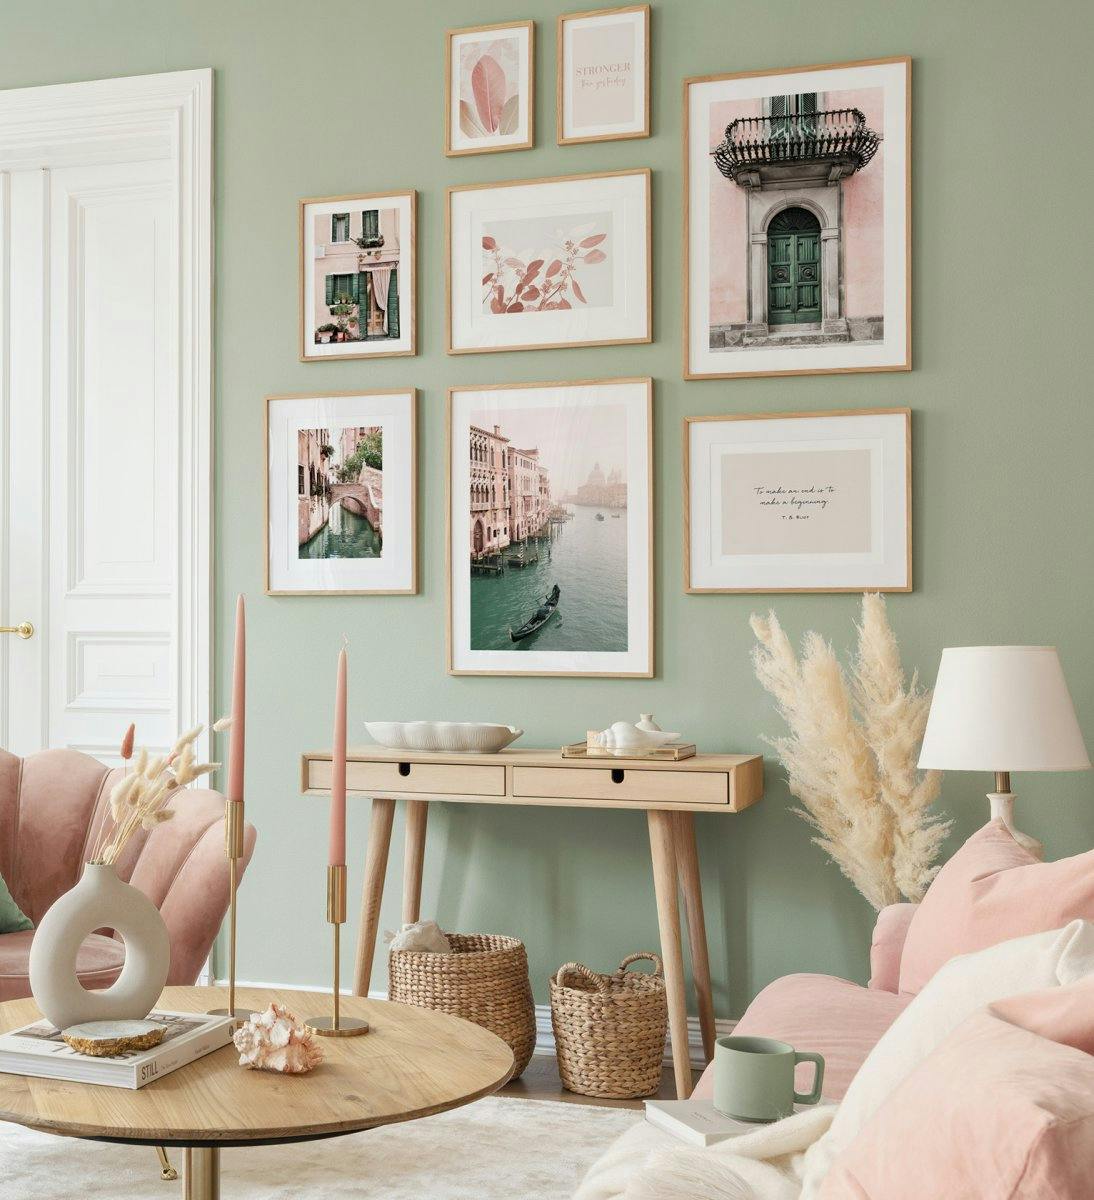 Fotografien in Pastellfarben kreieren eine verspielte und frische Stimmung im Wohnzimmer